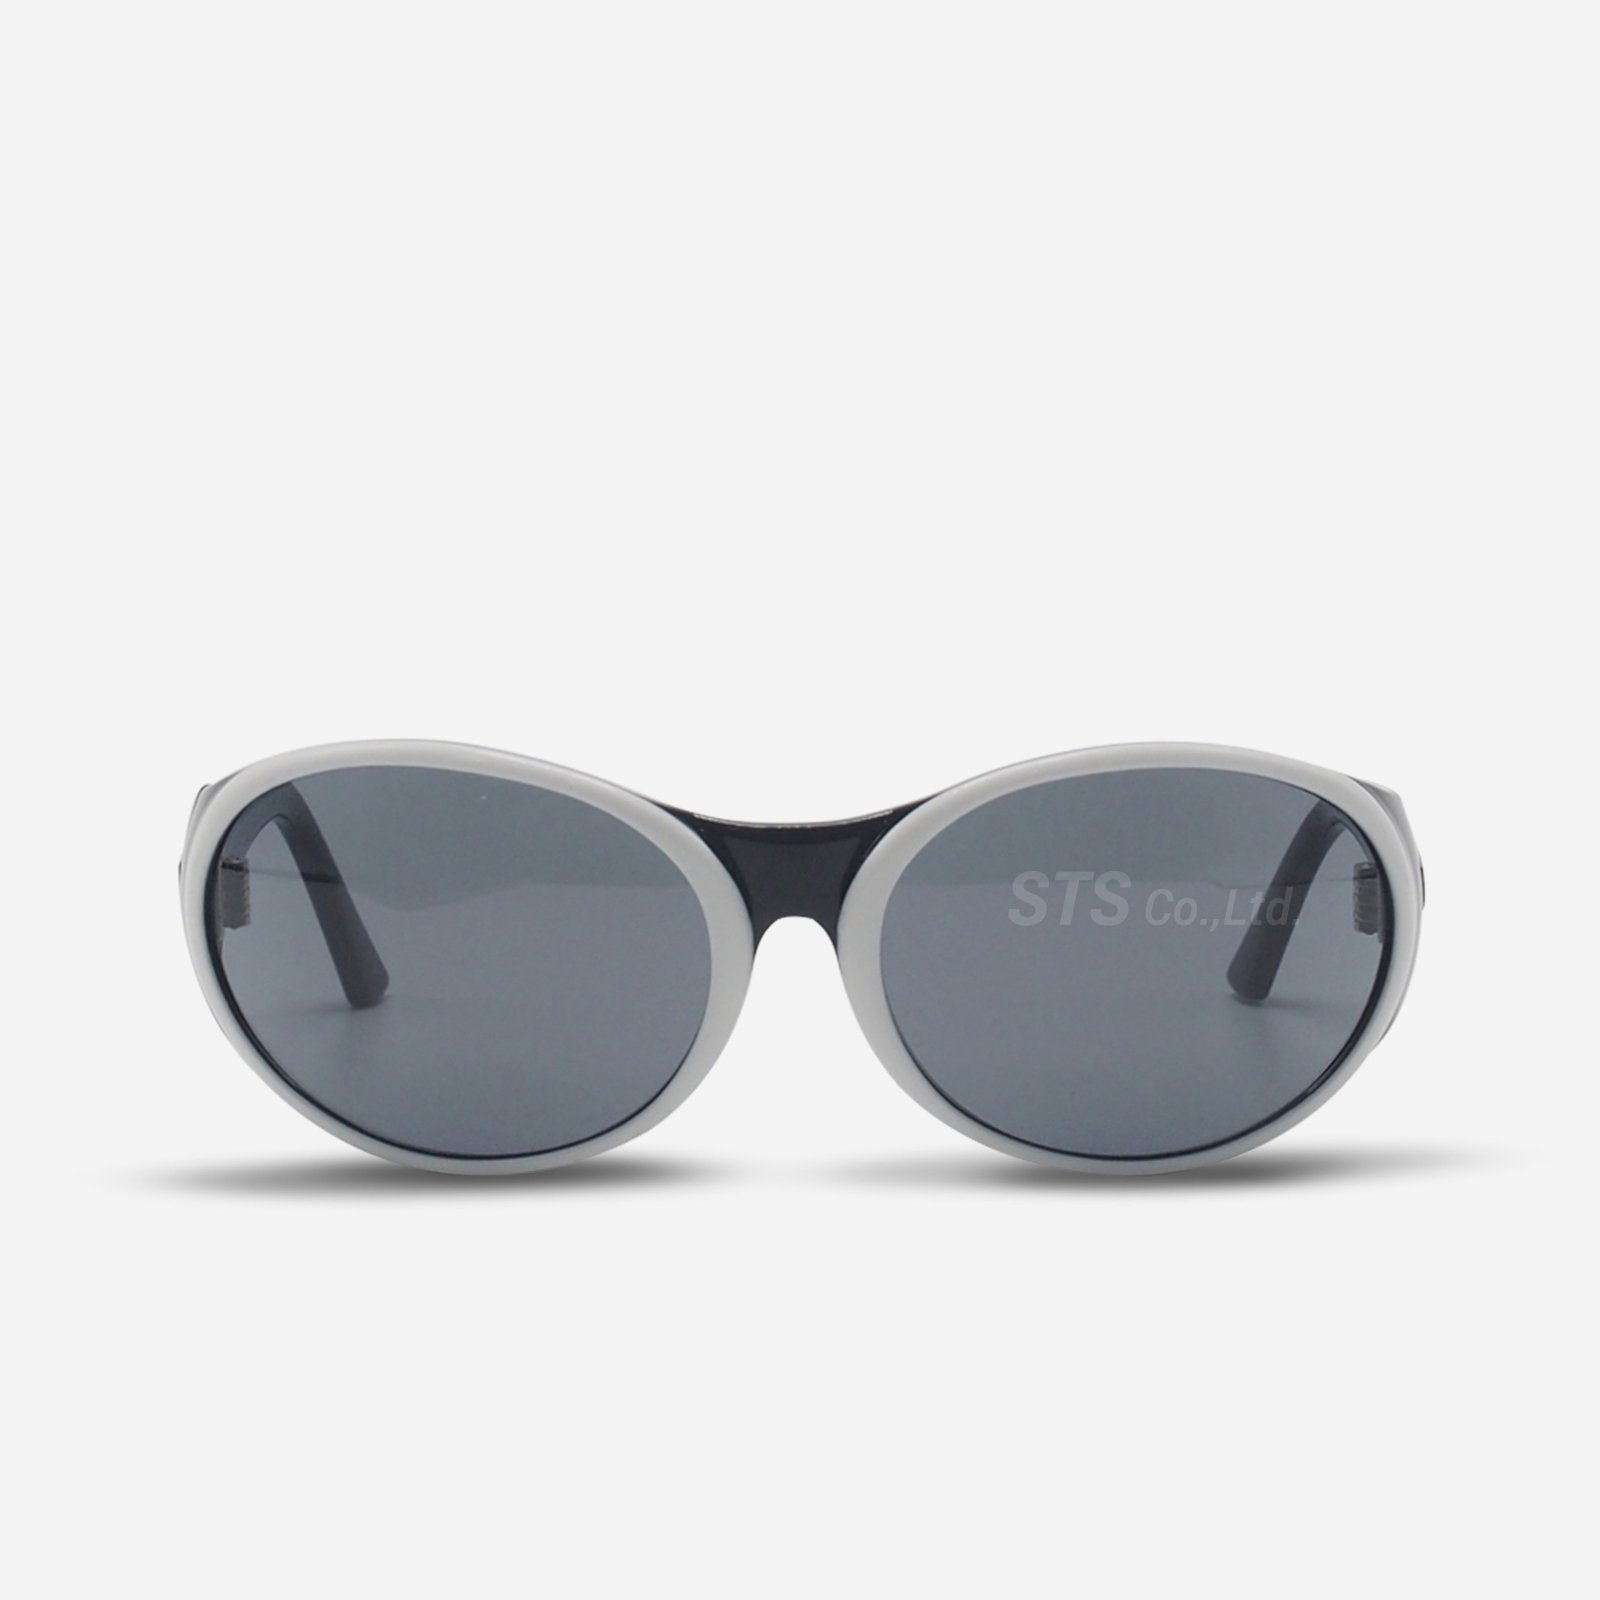 Supreme - Orb Sunglasses - ParkSIDER